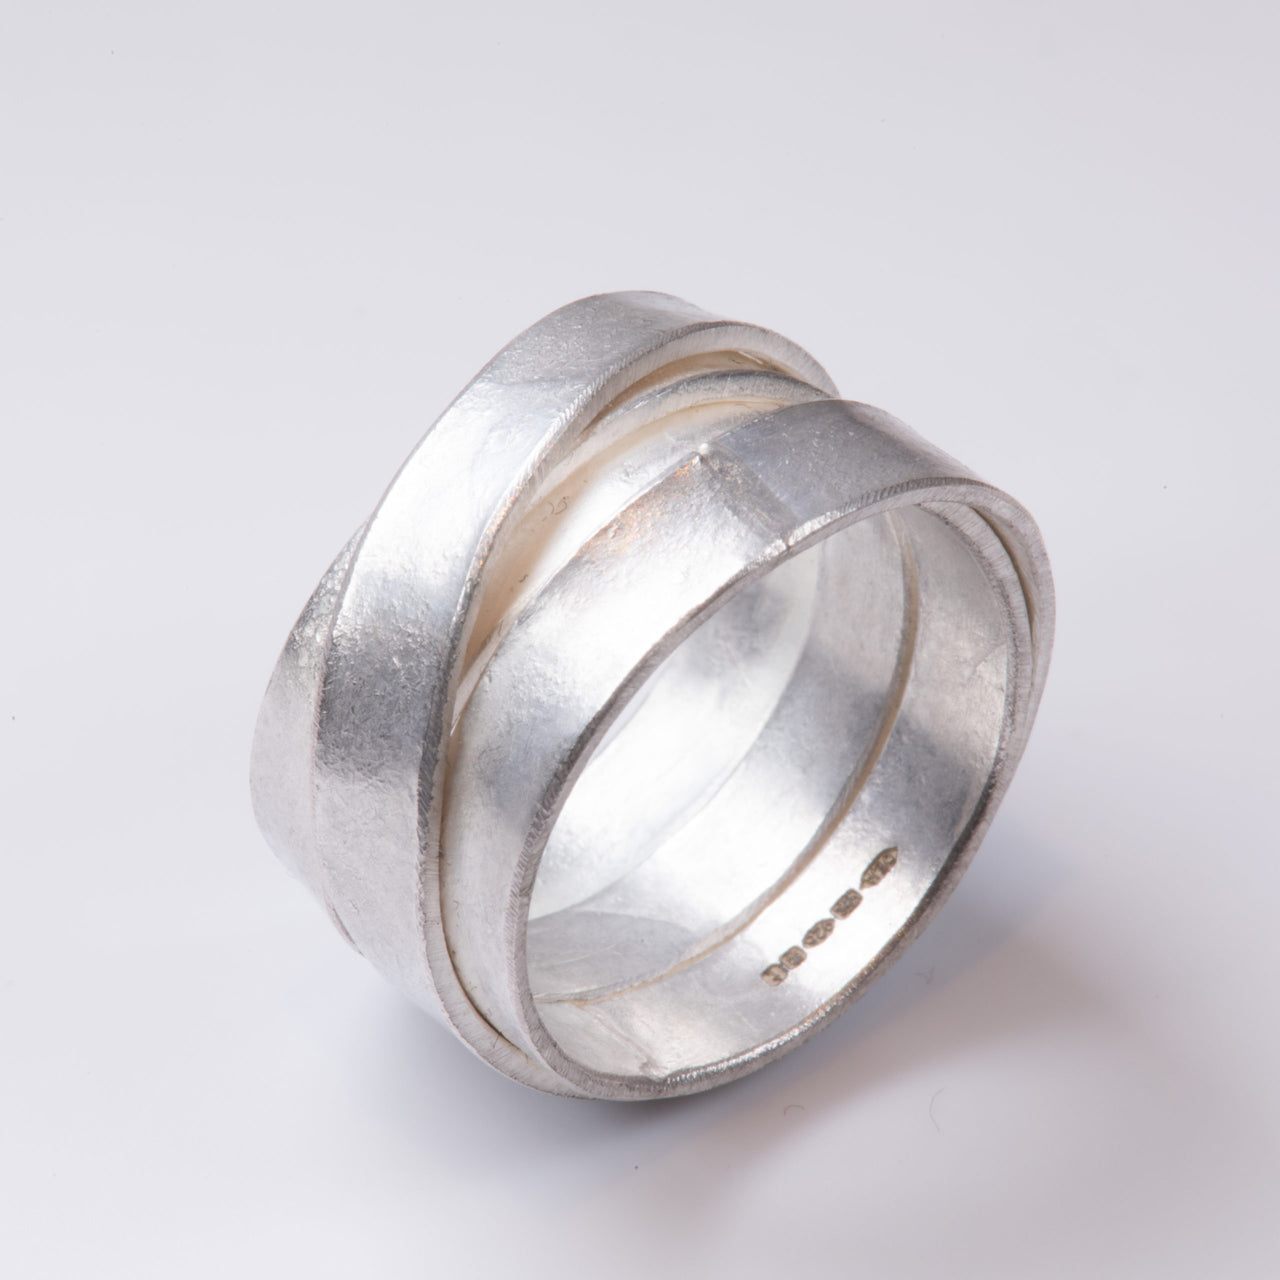 Silver Tagliatelle Ring